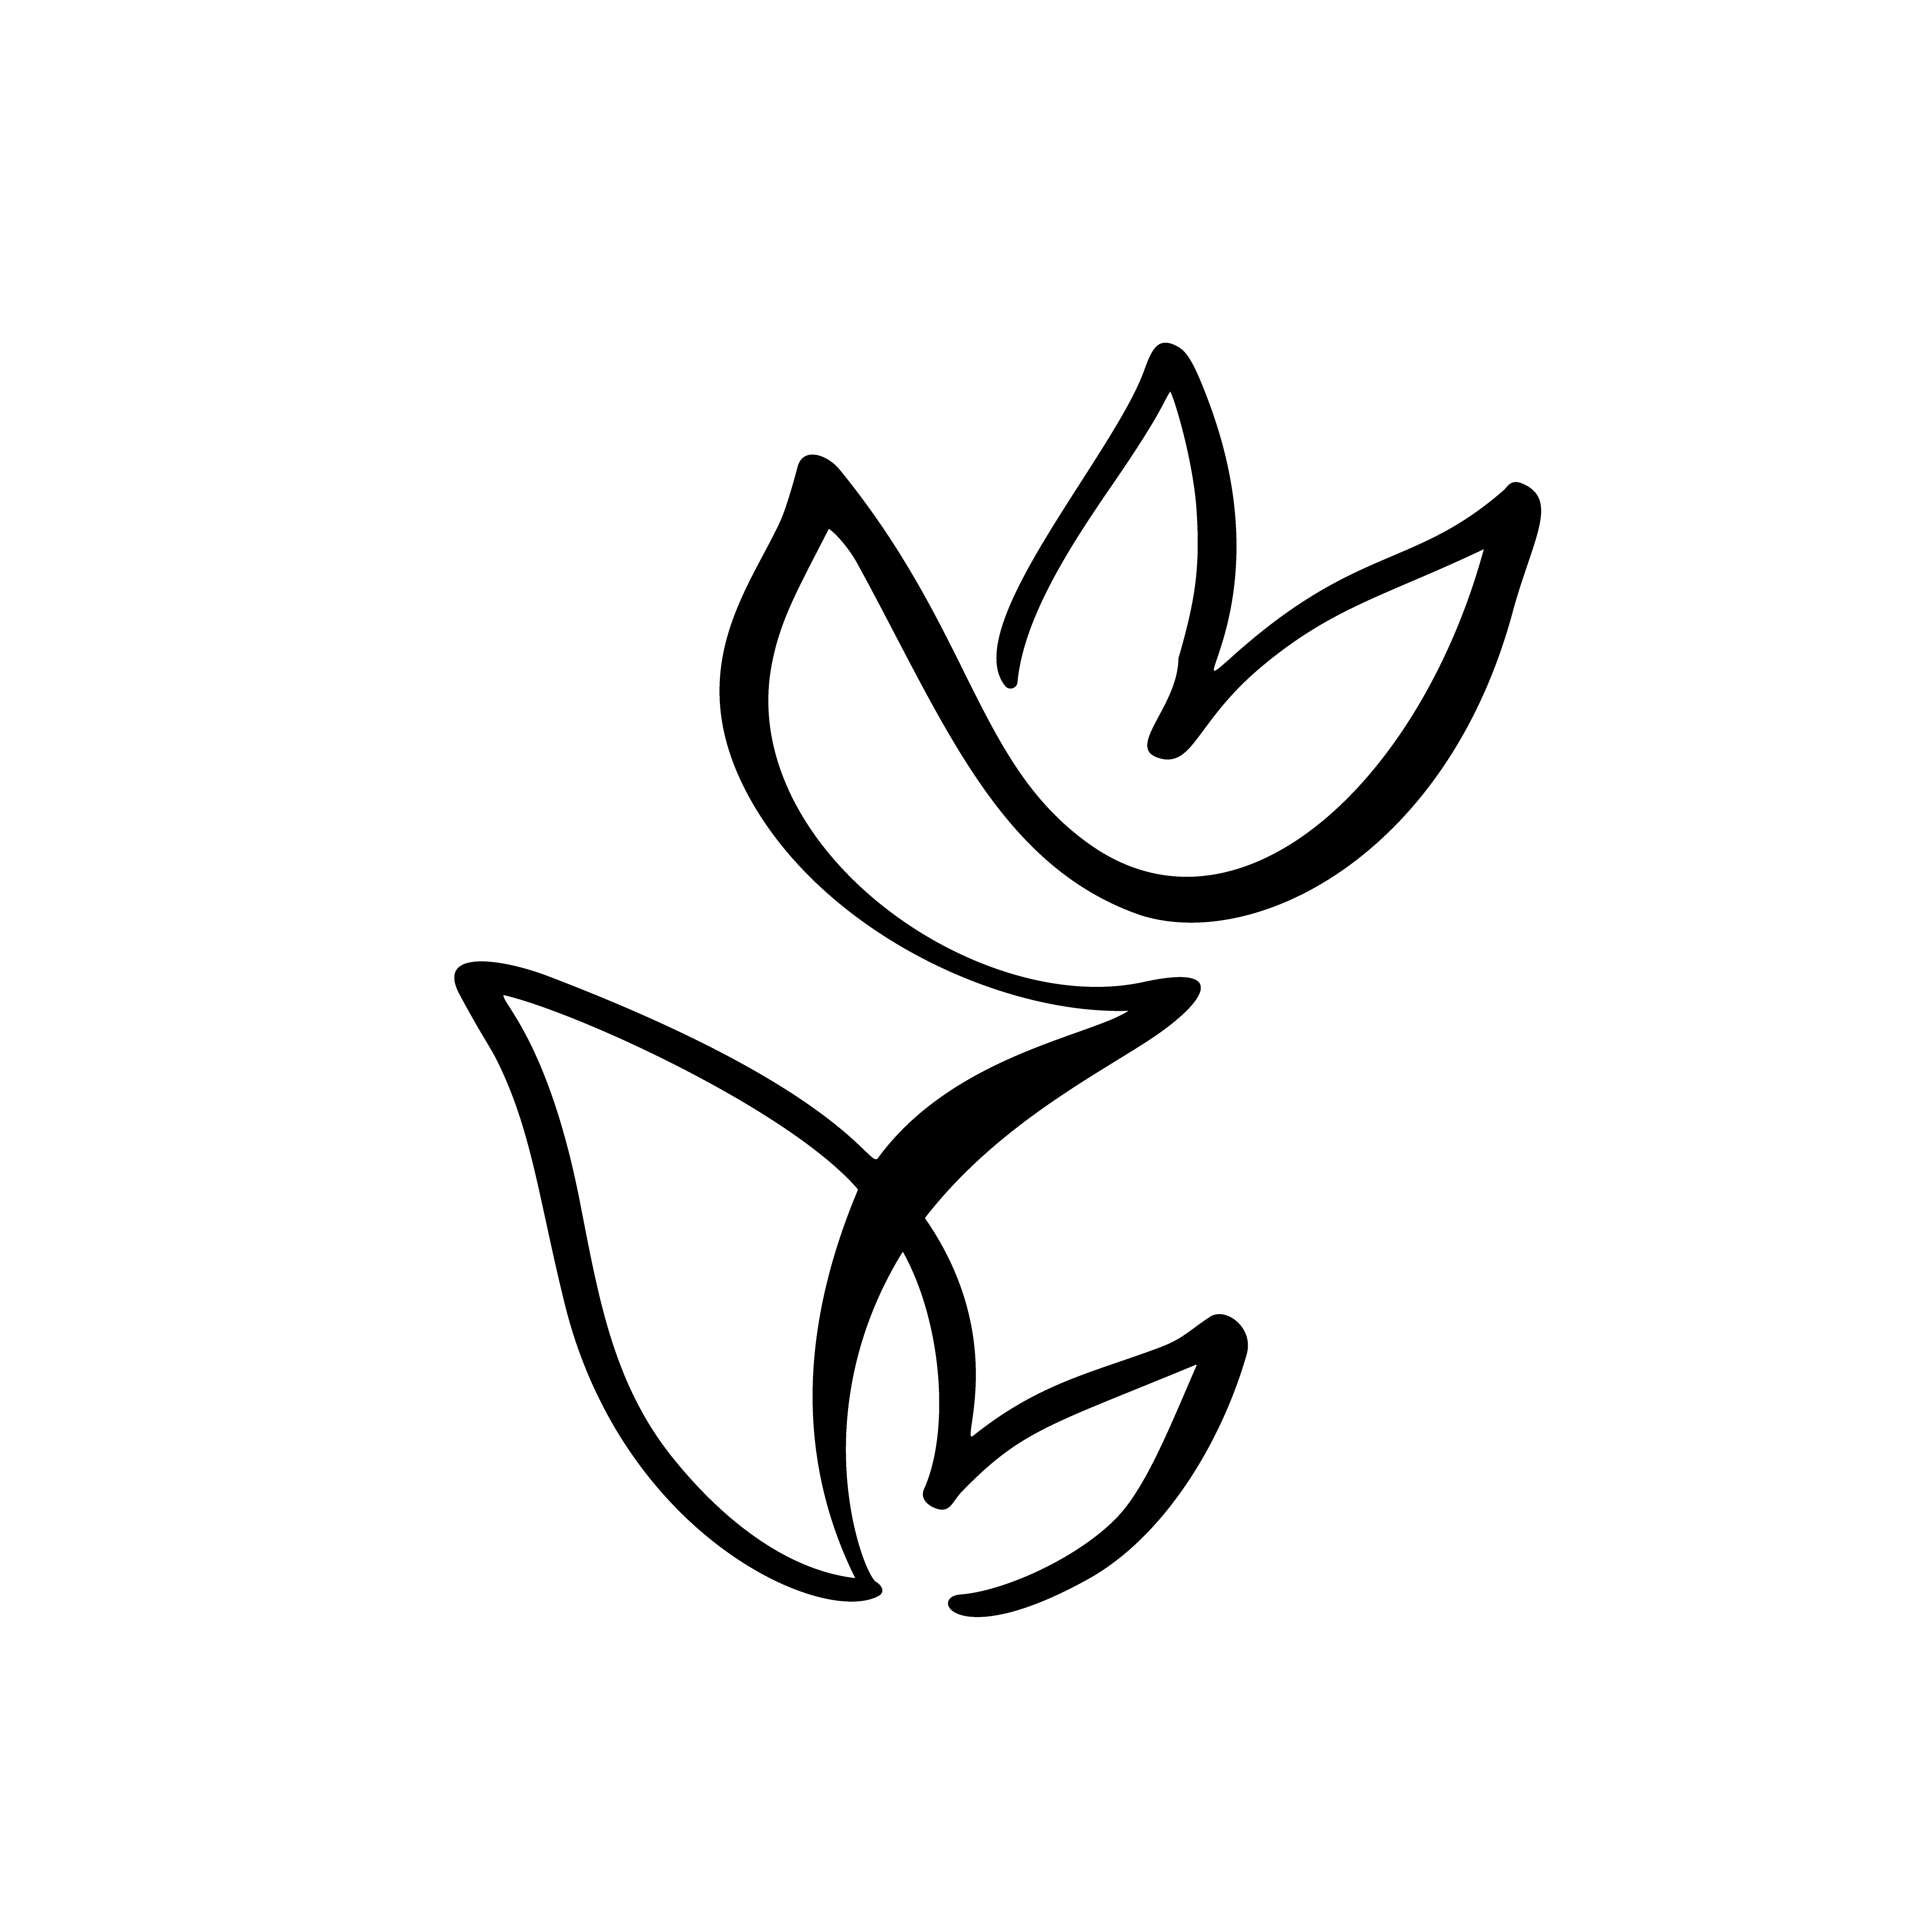 Logotipo de la flor del tulipán. Línea continua mano 